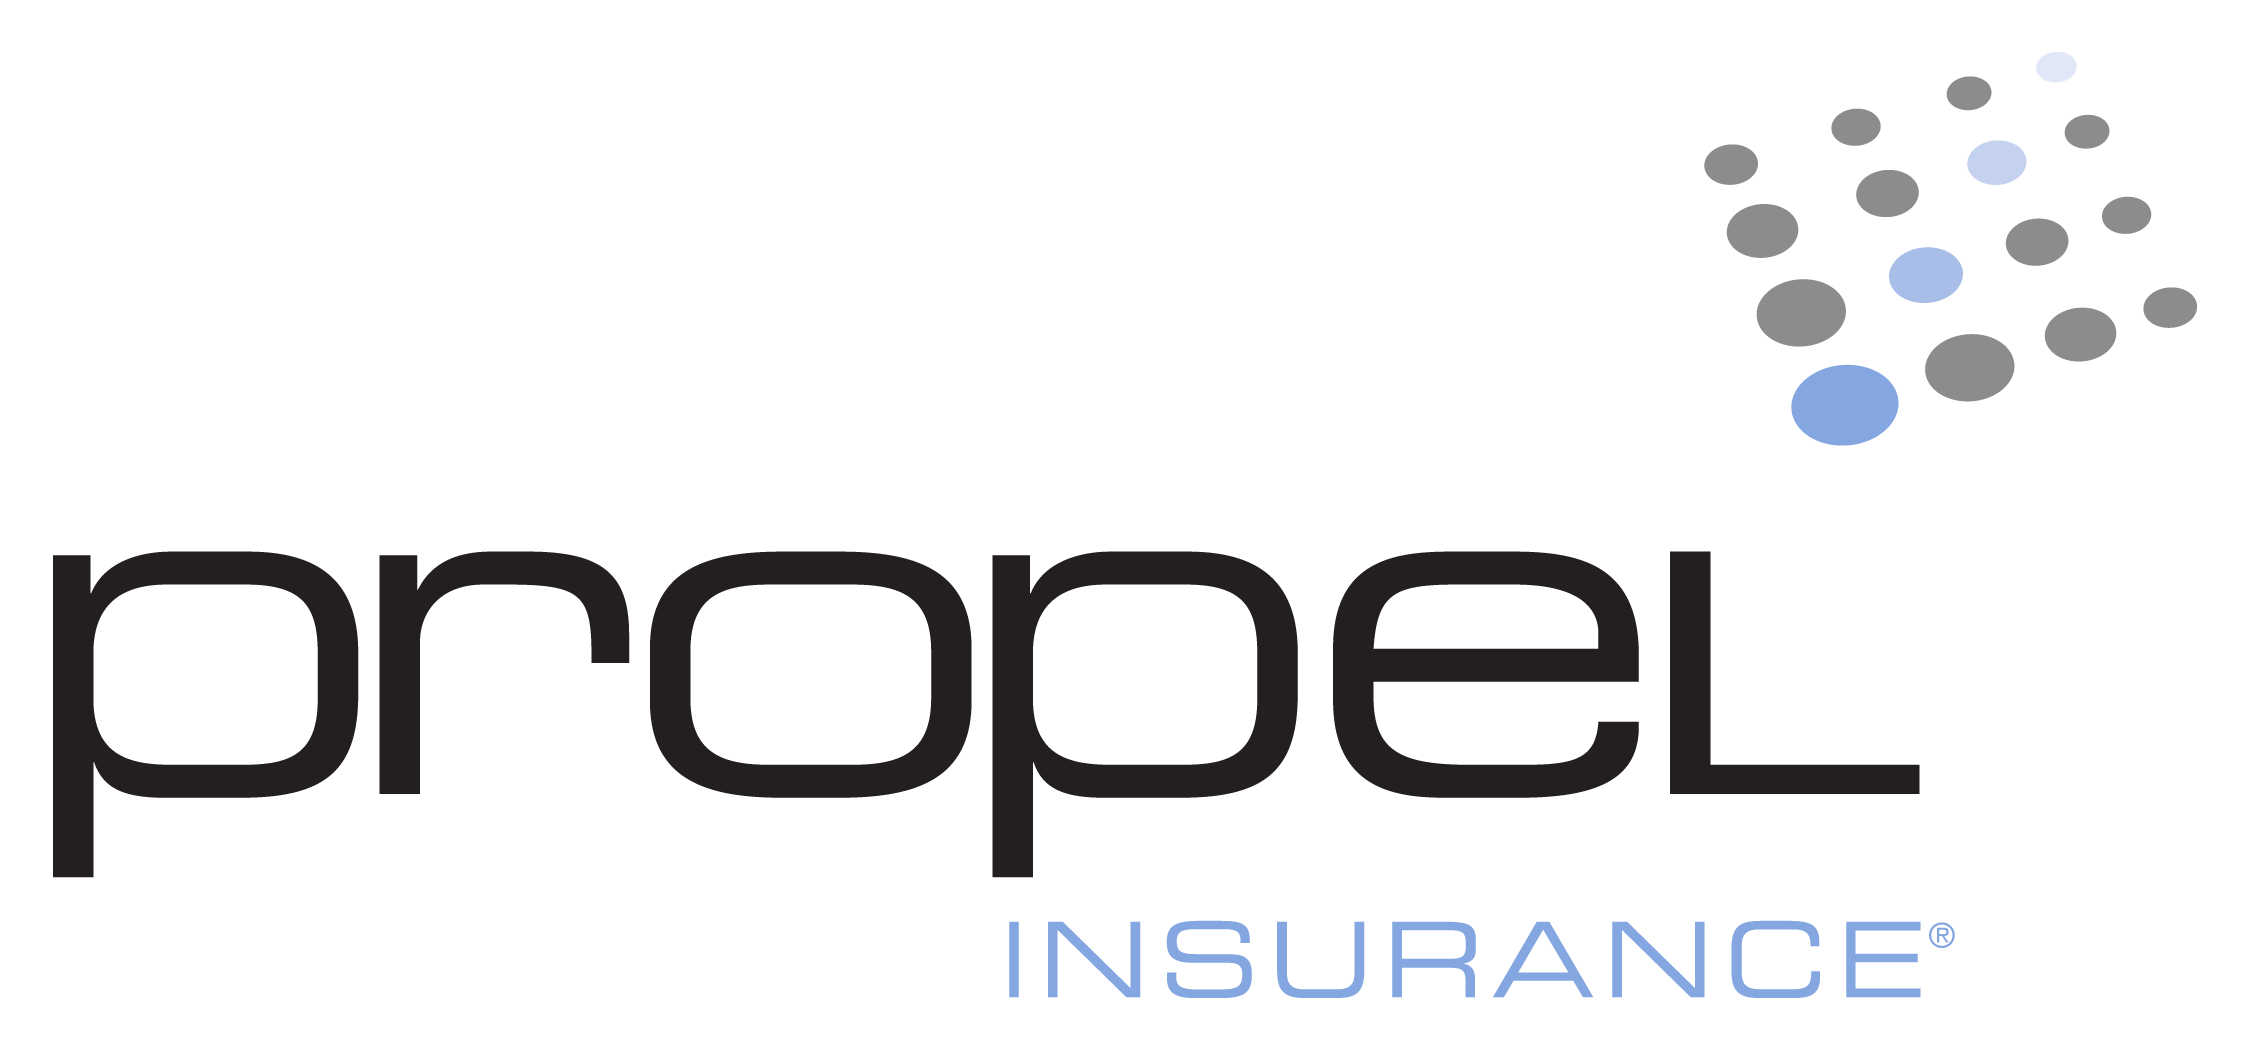 Propel Insurance Agency